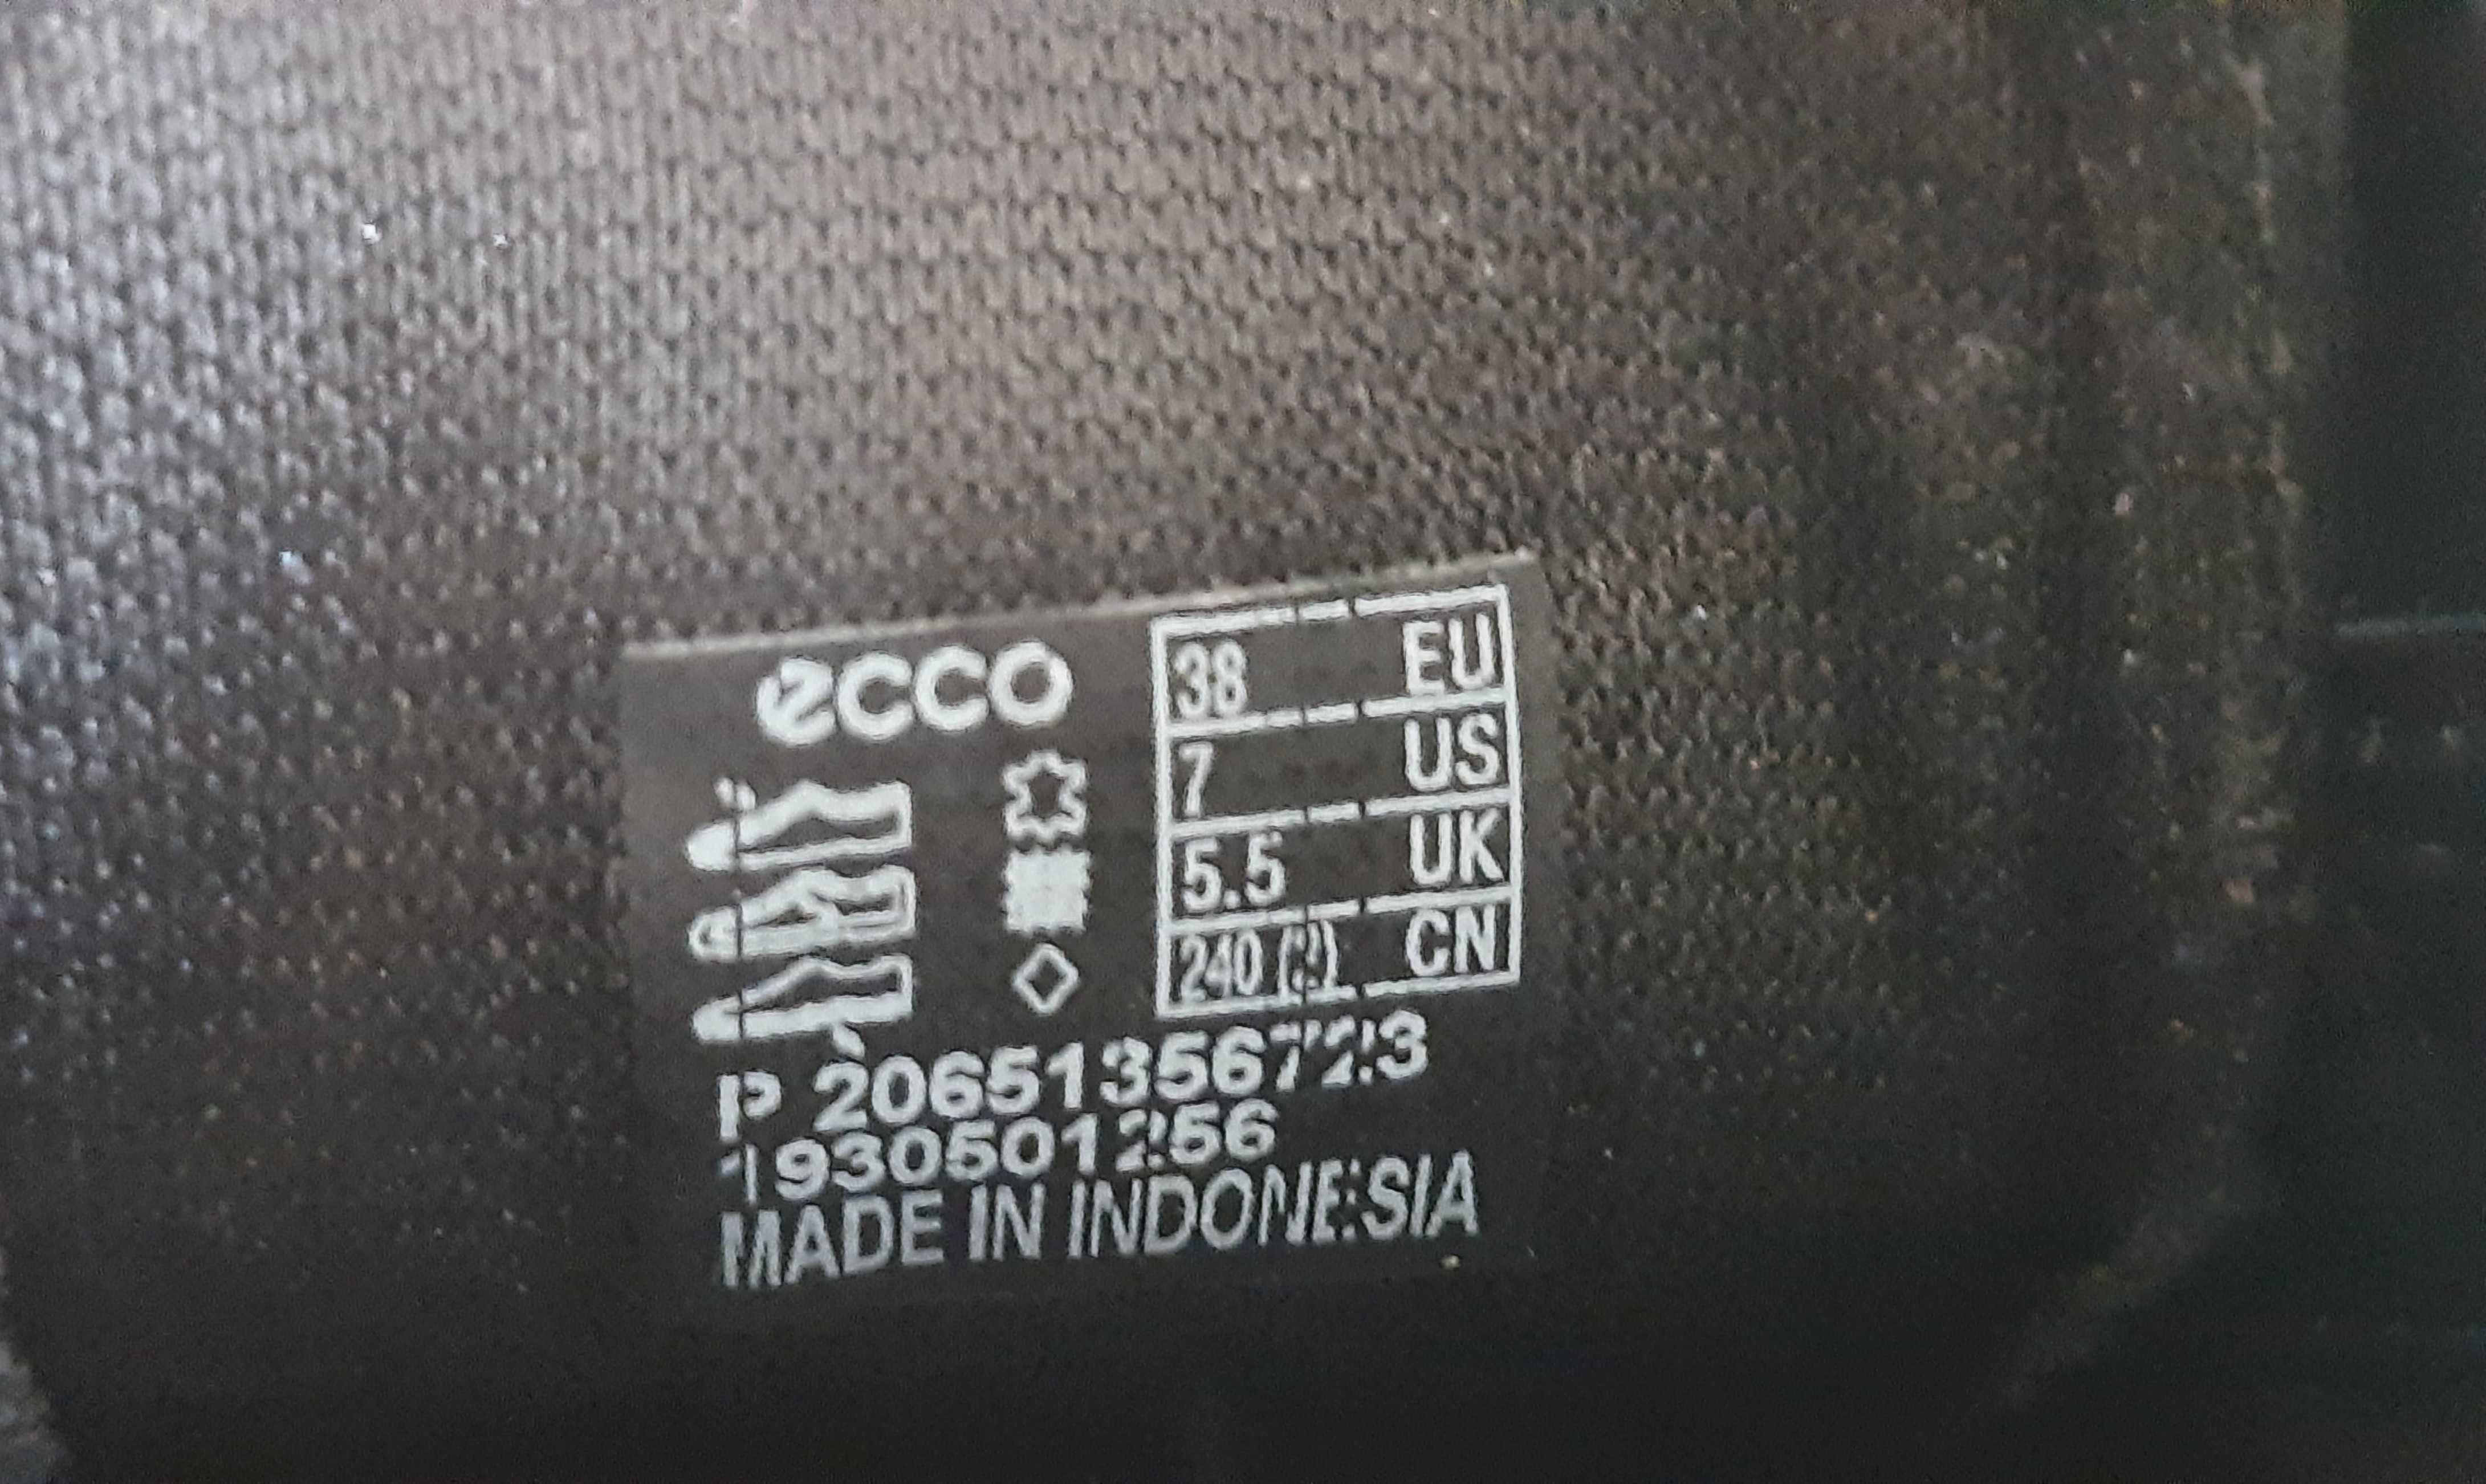 Стильные черные кожаные кроссовки Ecco Soft 2. Размер 38, 24,5-25см.